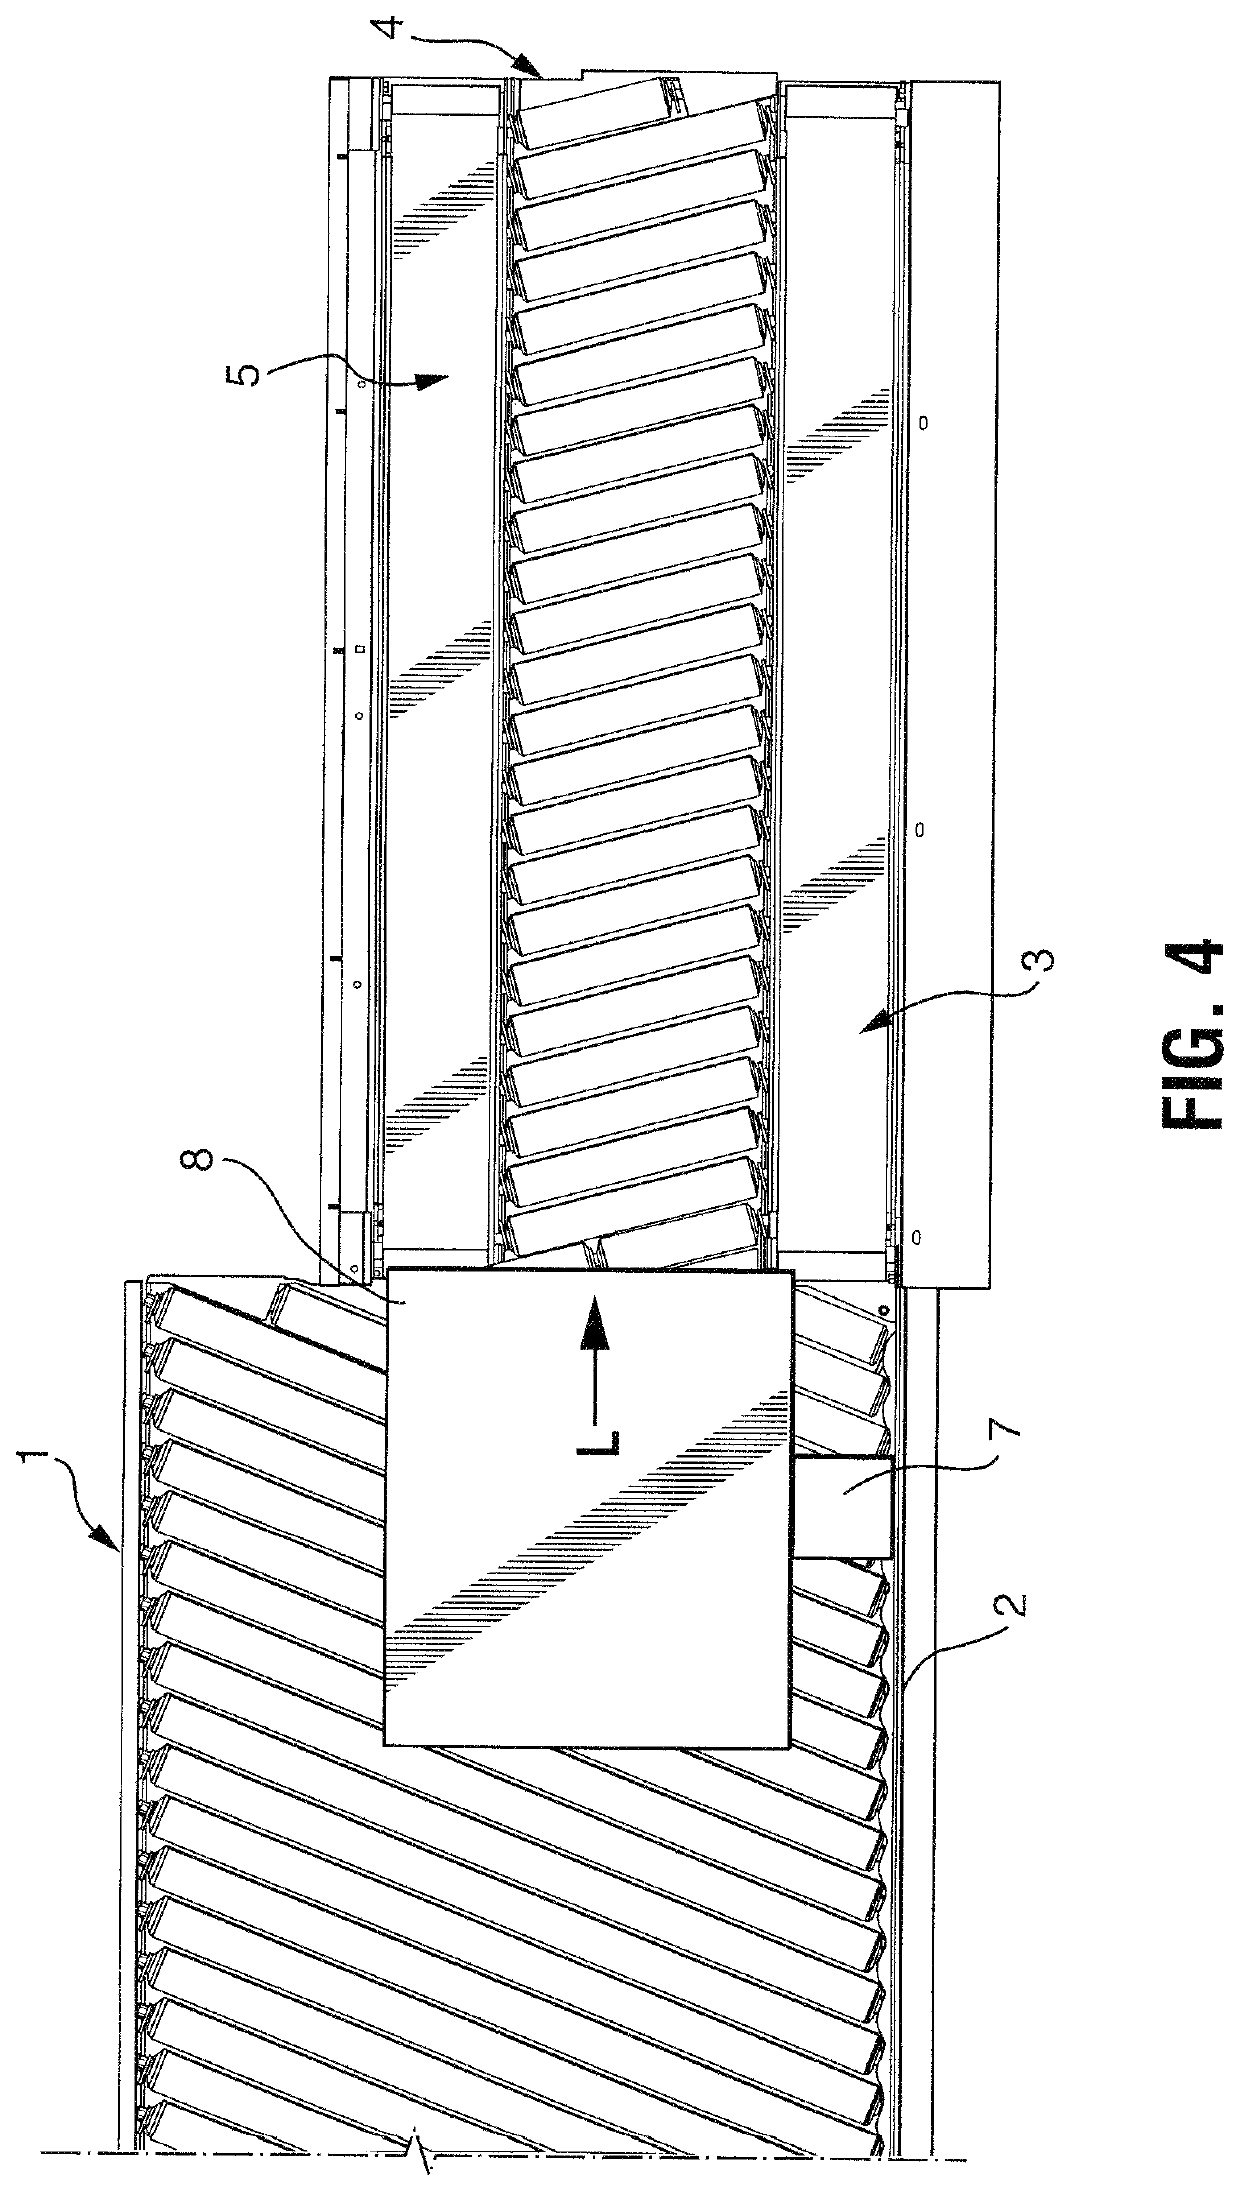 Singulator conveyor assembly for separating parcels